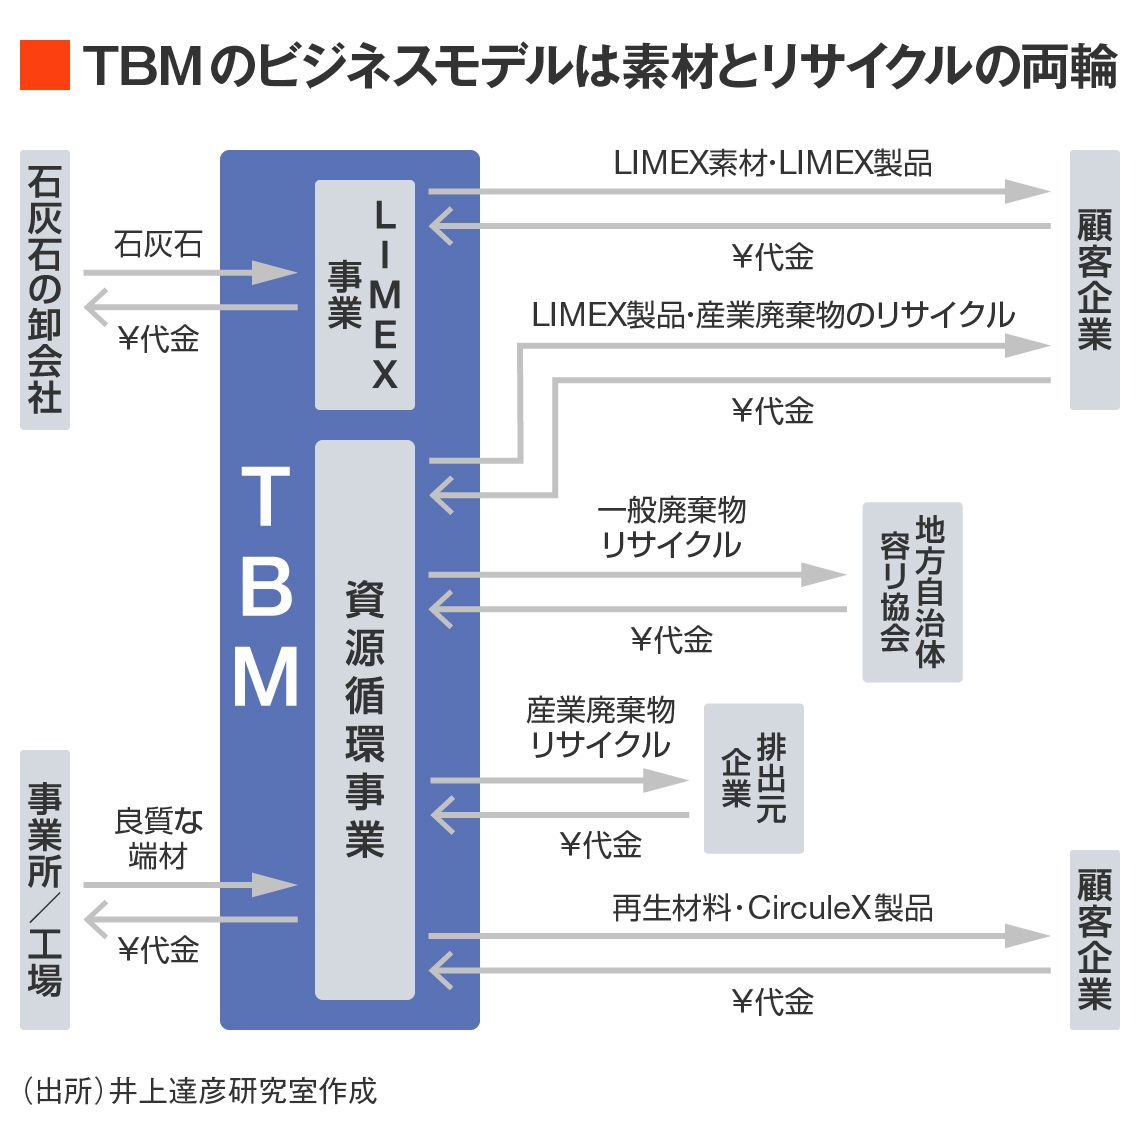 TBMのビジネスモデル図解